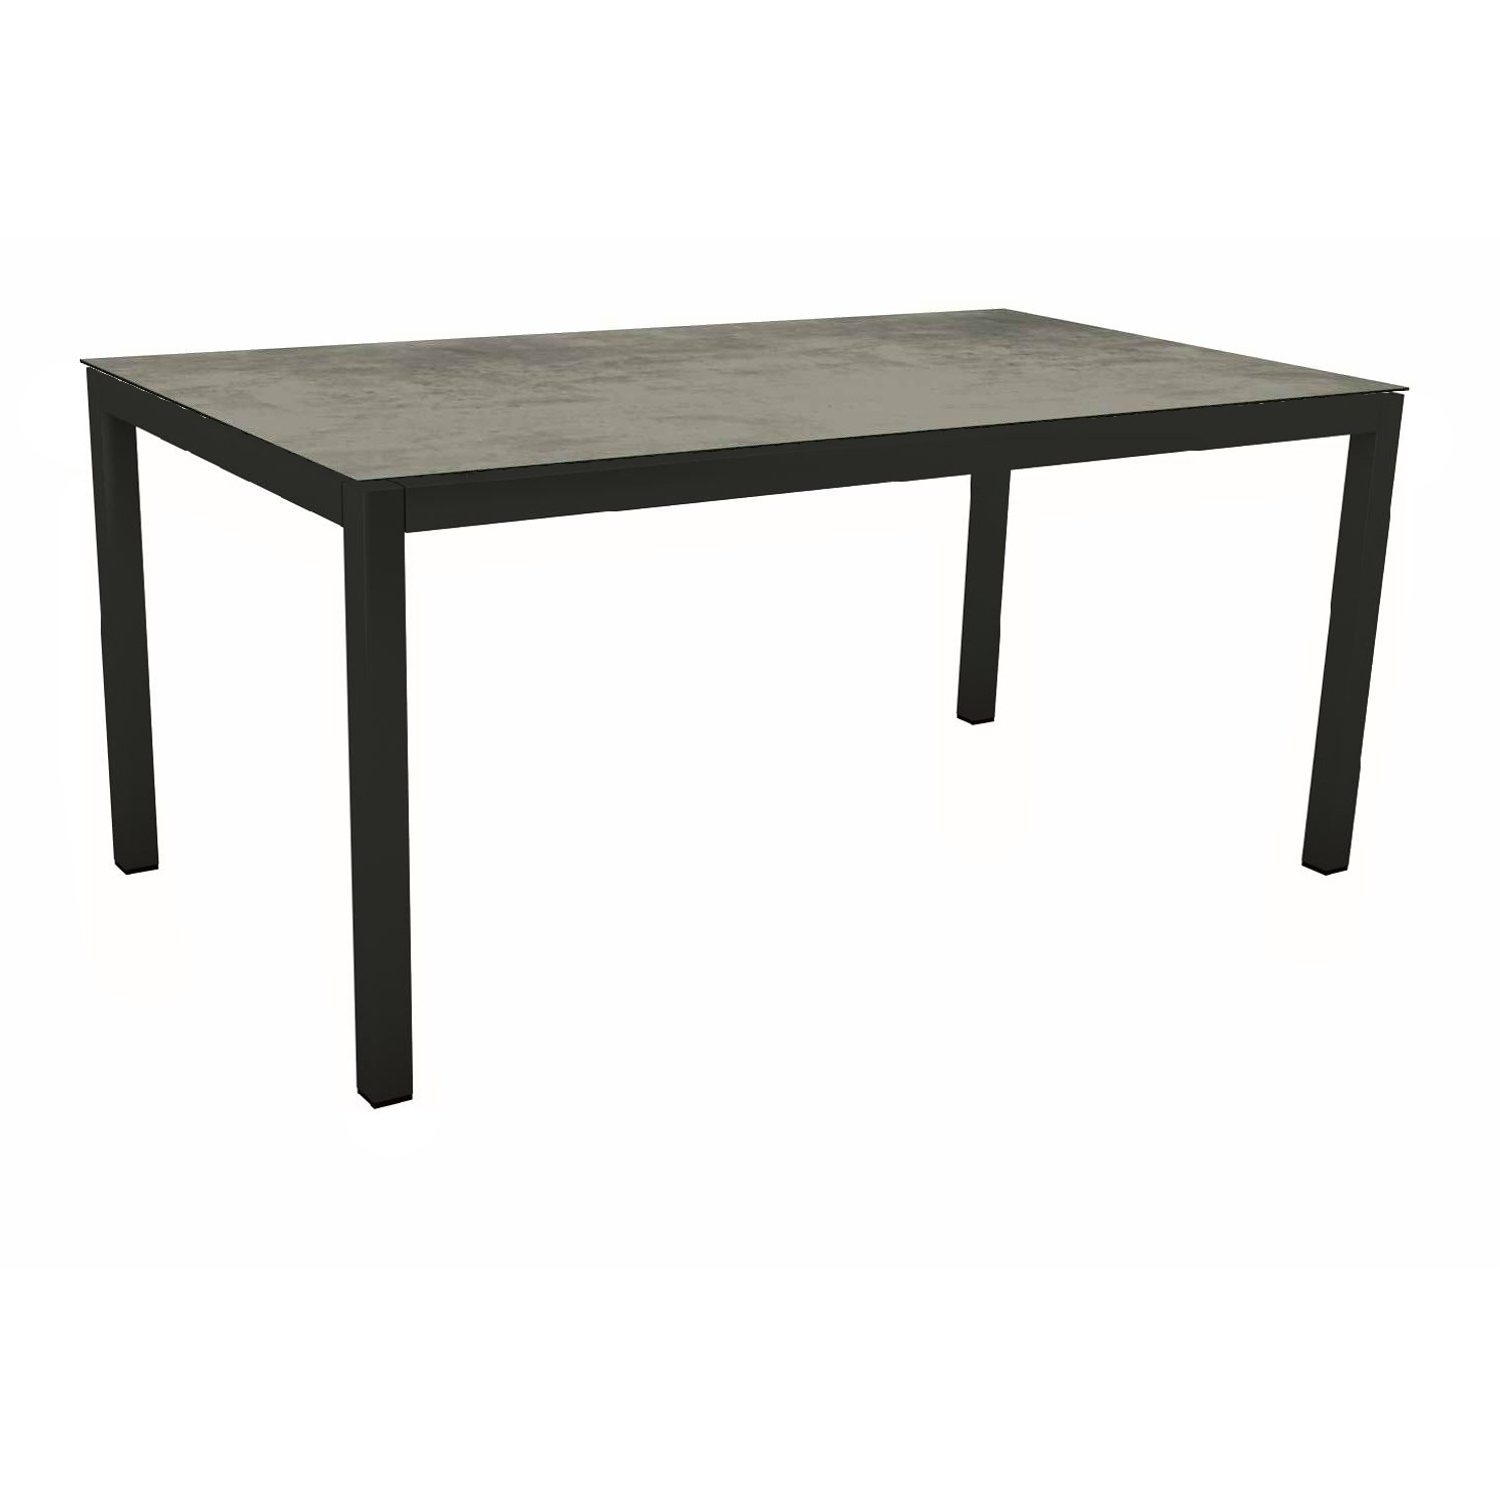 Stern Gartentisch, Gestell Aluminium schwarz matt, Tischplatte HPL Zement, 130x80 cm